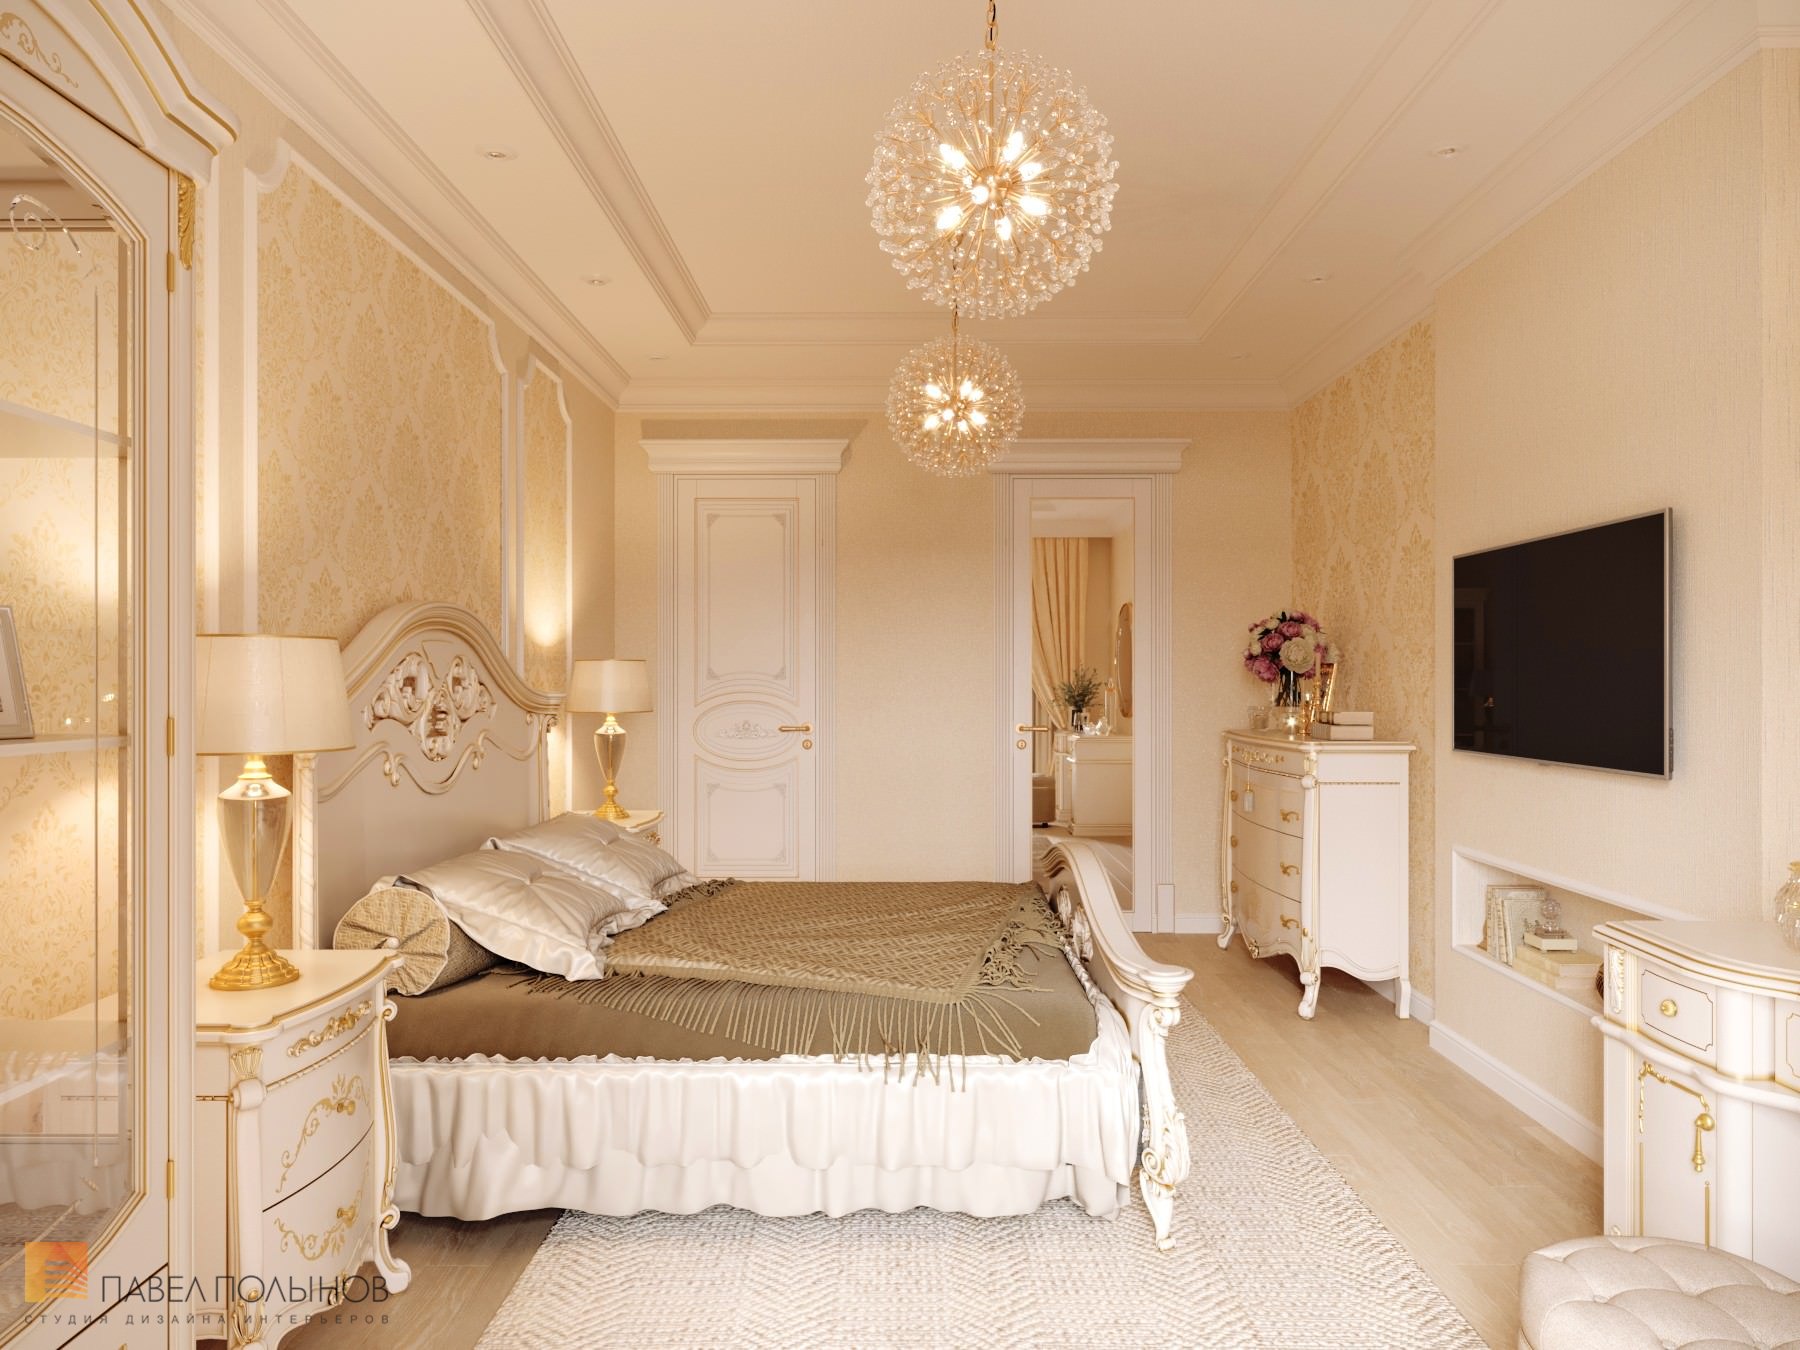 Фото дизайн интерьера спальни из проекта «Квартира в классическом стиле в ЖК «Русский дом», 144 кв.м.»